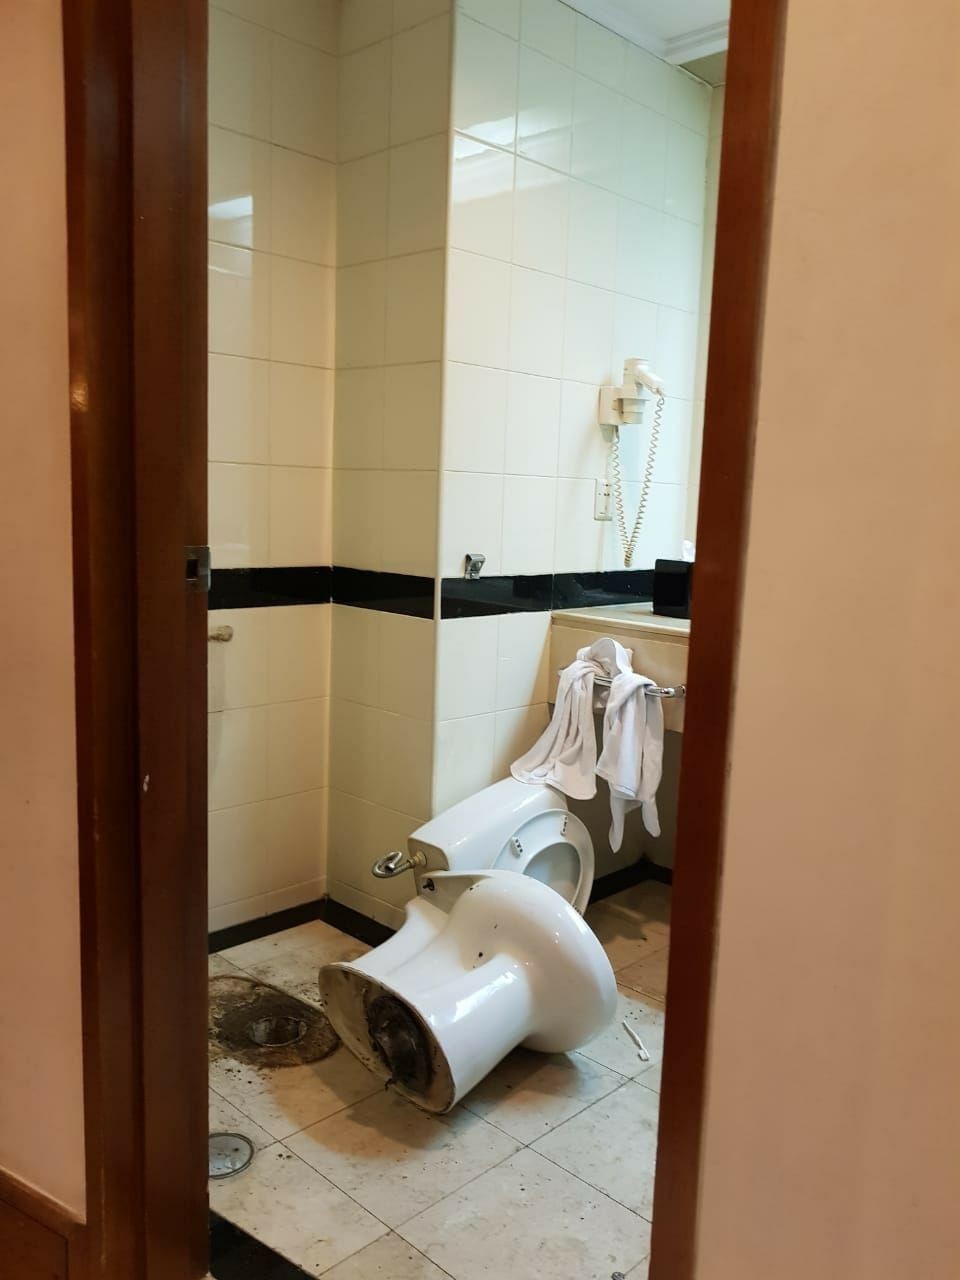 Polisi Sempat Bongkar Toilet, Begini 5 Fakta Penangkapan Andi Arief